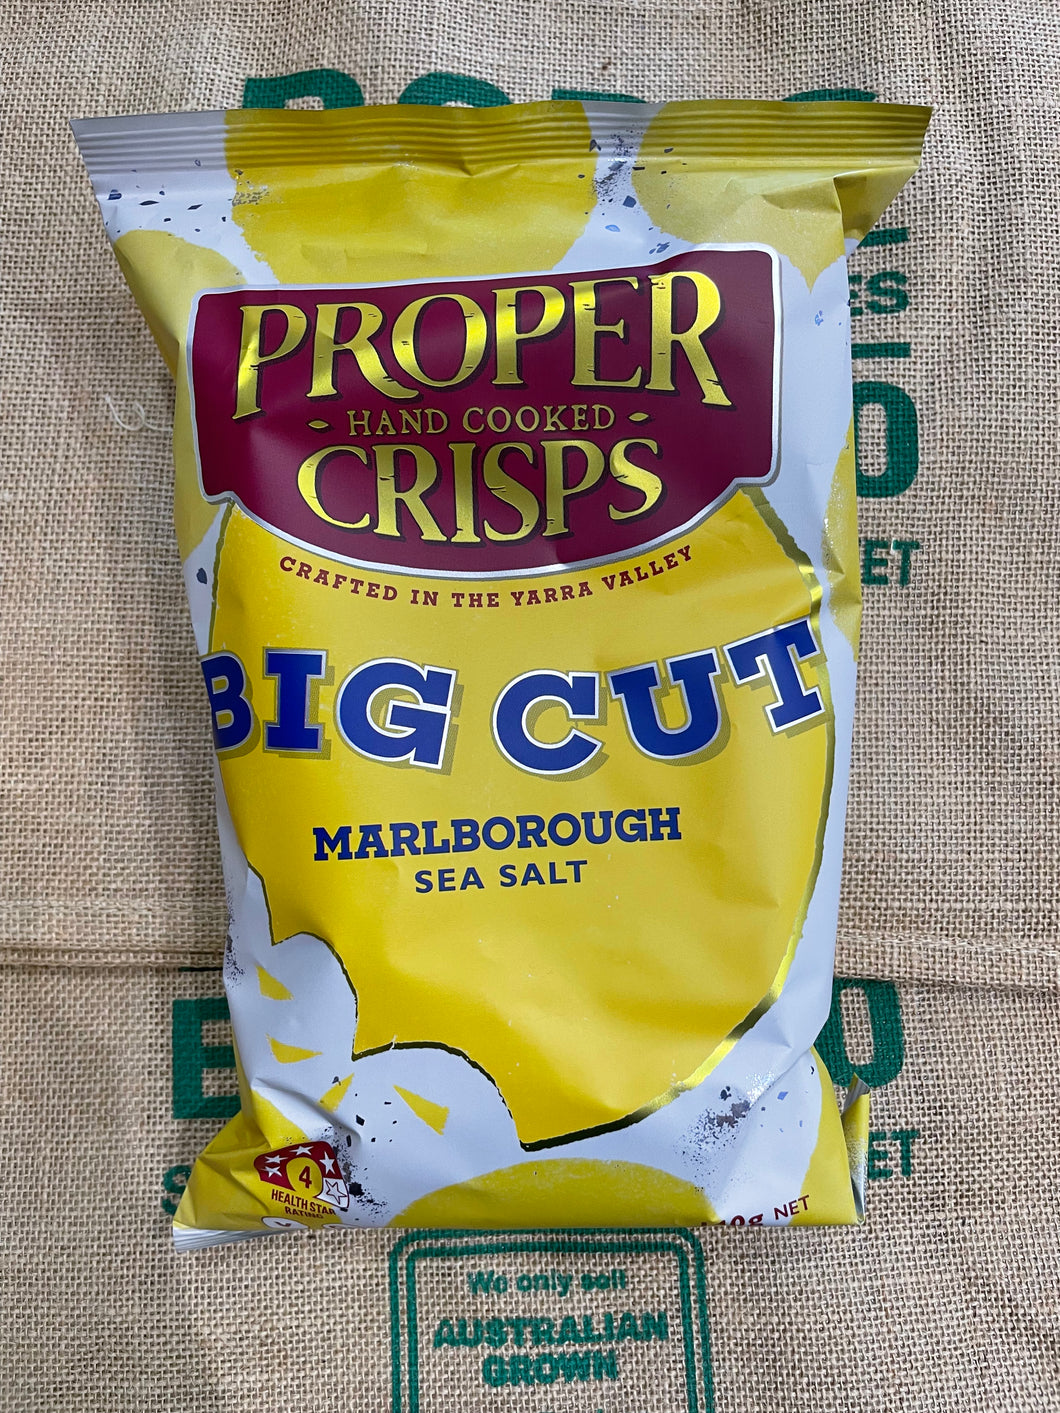 Chips-Proper Crisps Sea Salt 140g